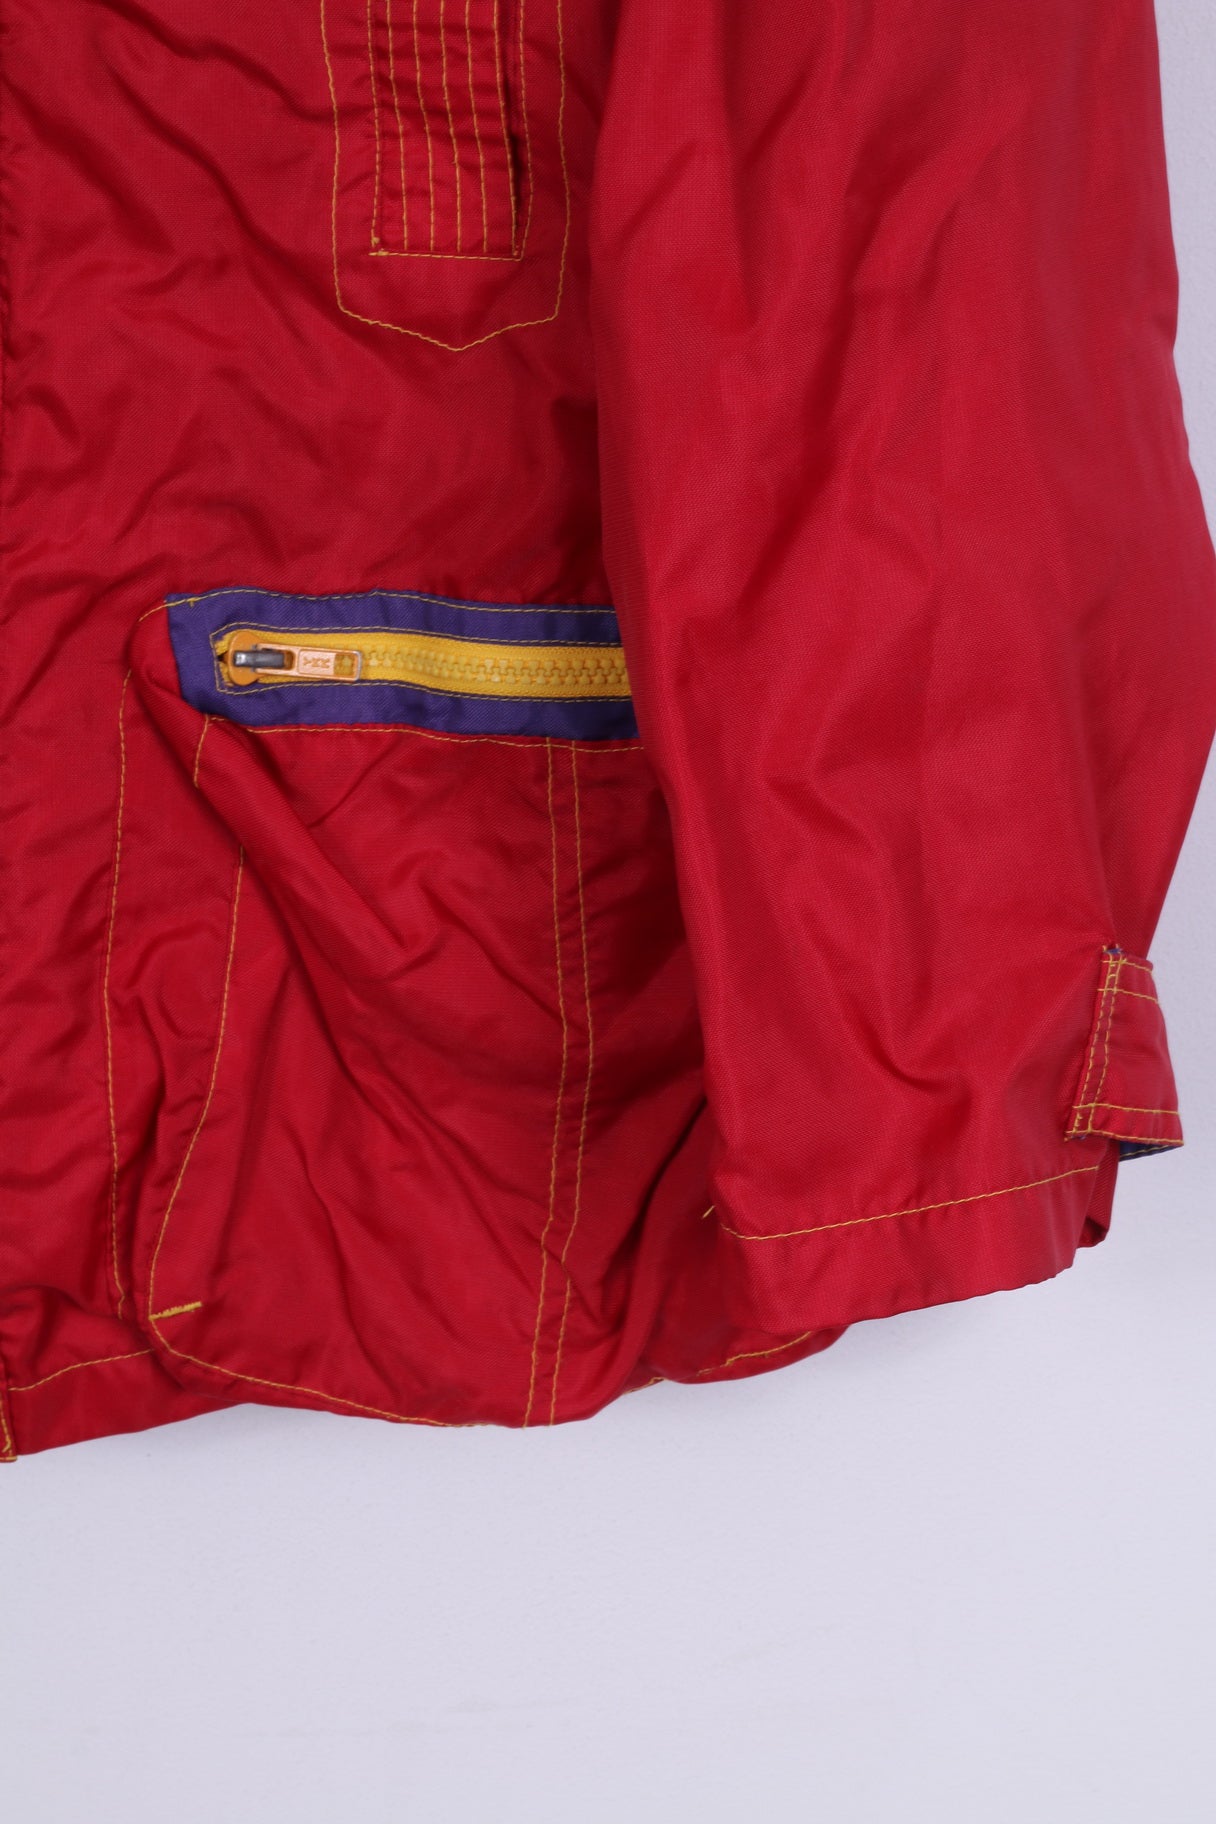 D-xel Blue wave Kollektion Femmes 16 XL Veste Outdoor Wear Full Zipper Rouge Nylon vintage 